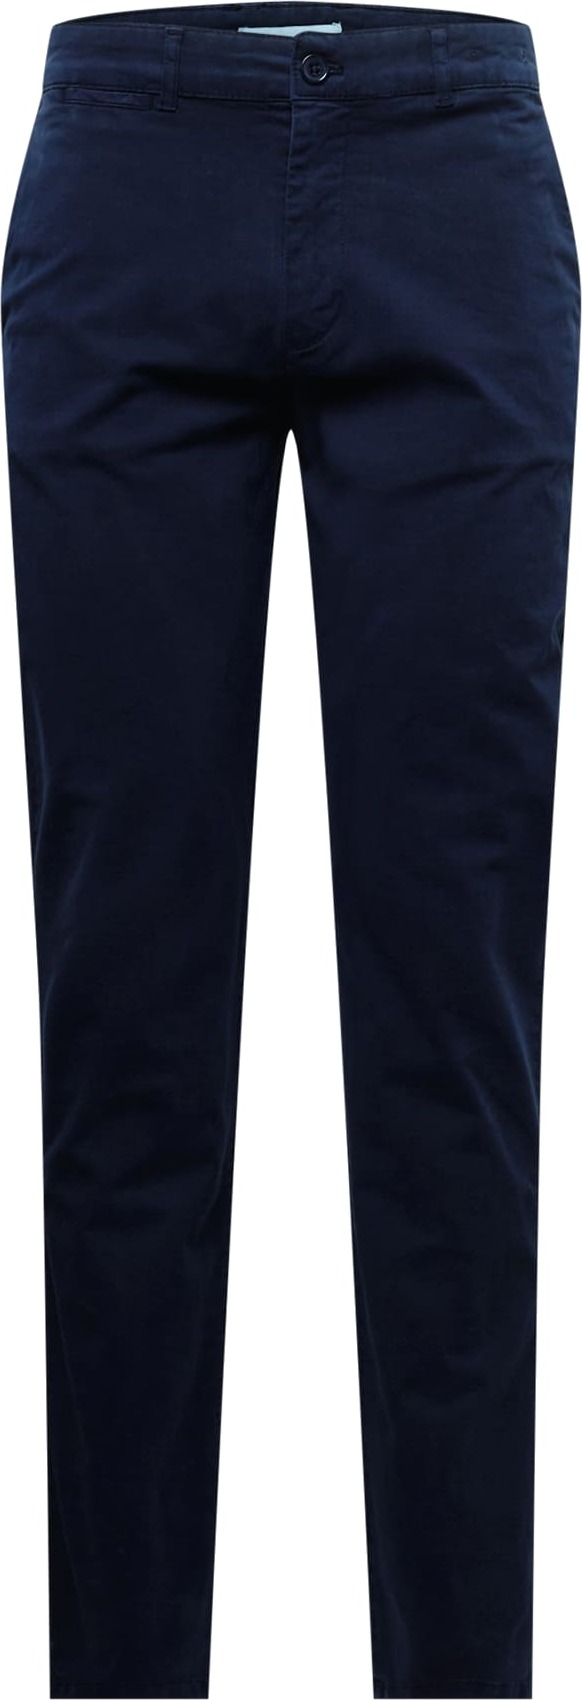 By Garment Makers Chino kalhoty námořnická modř